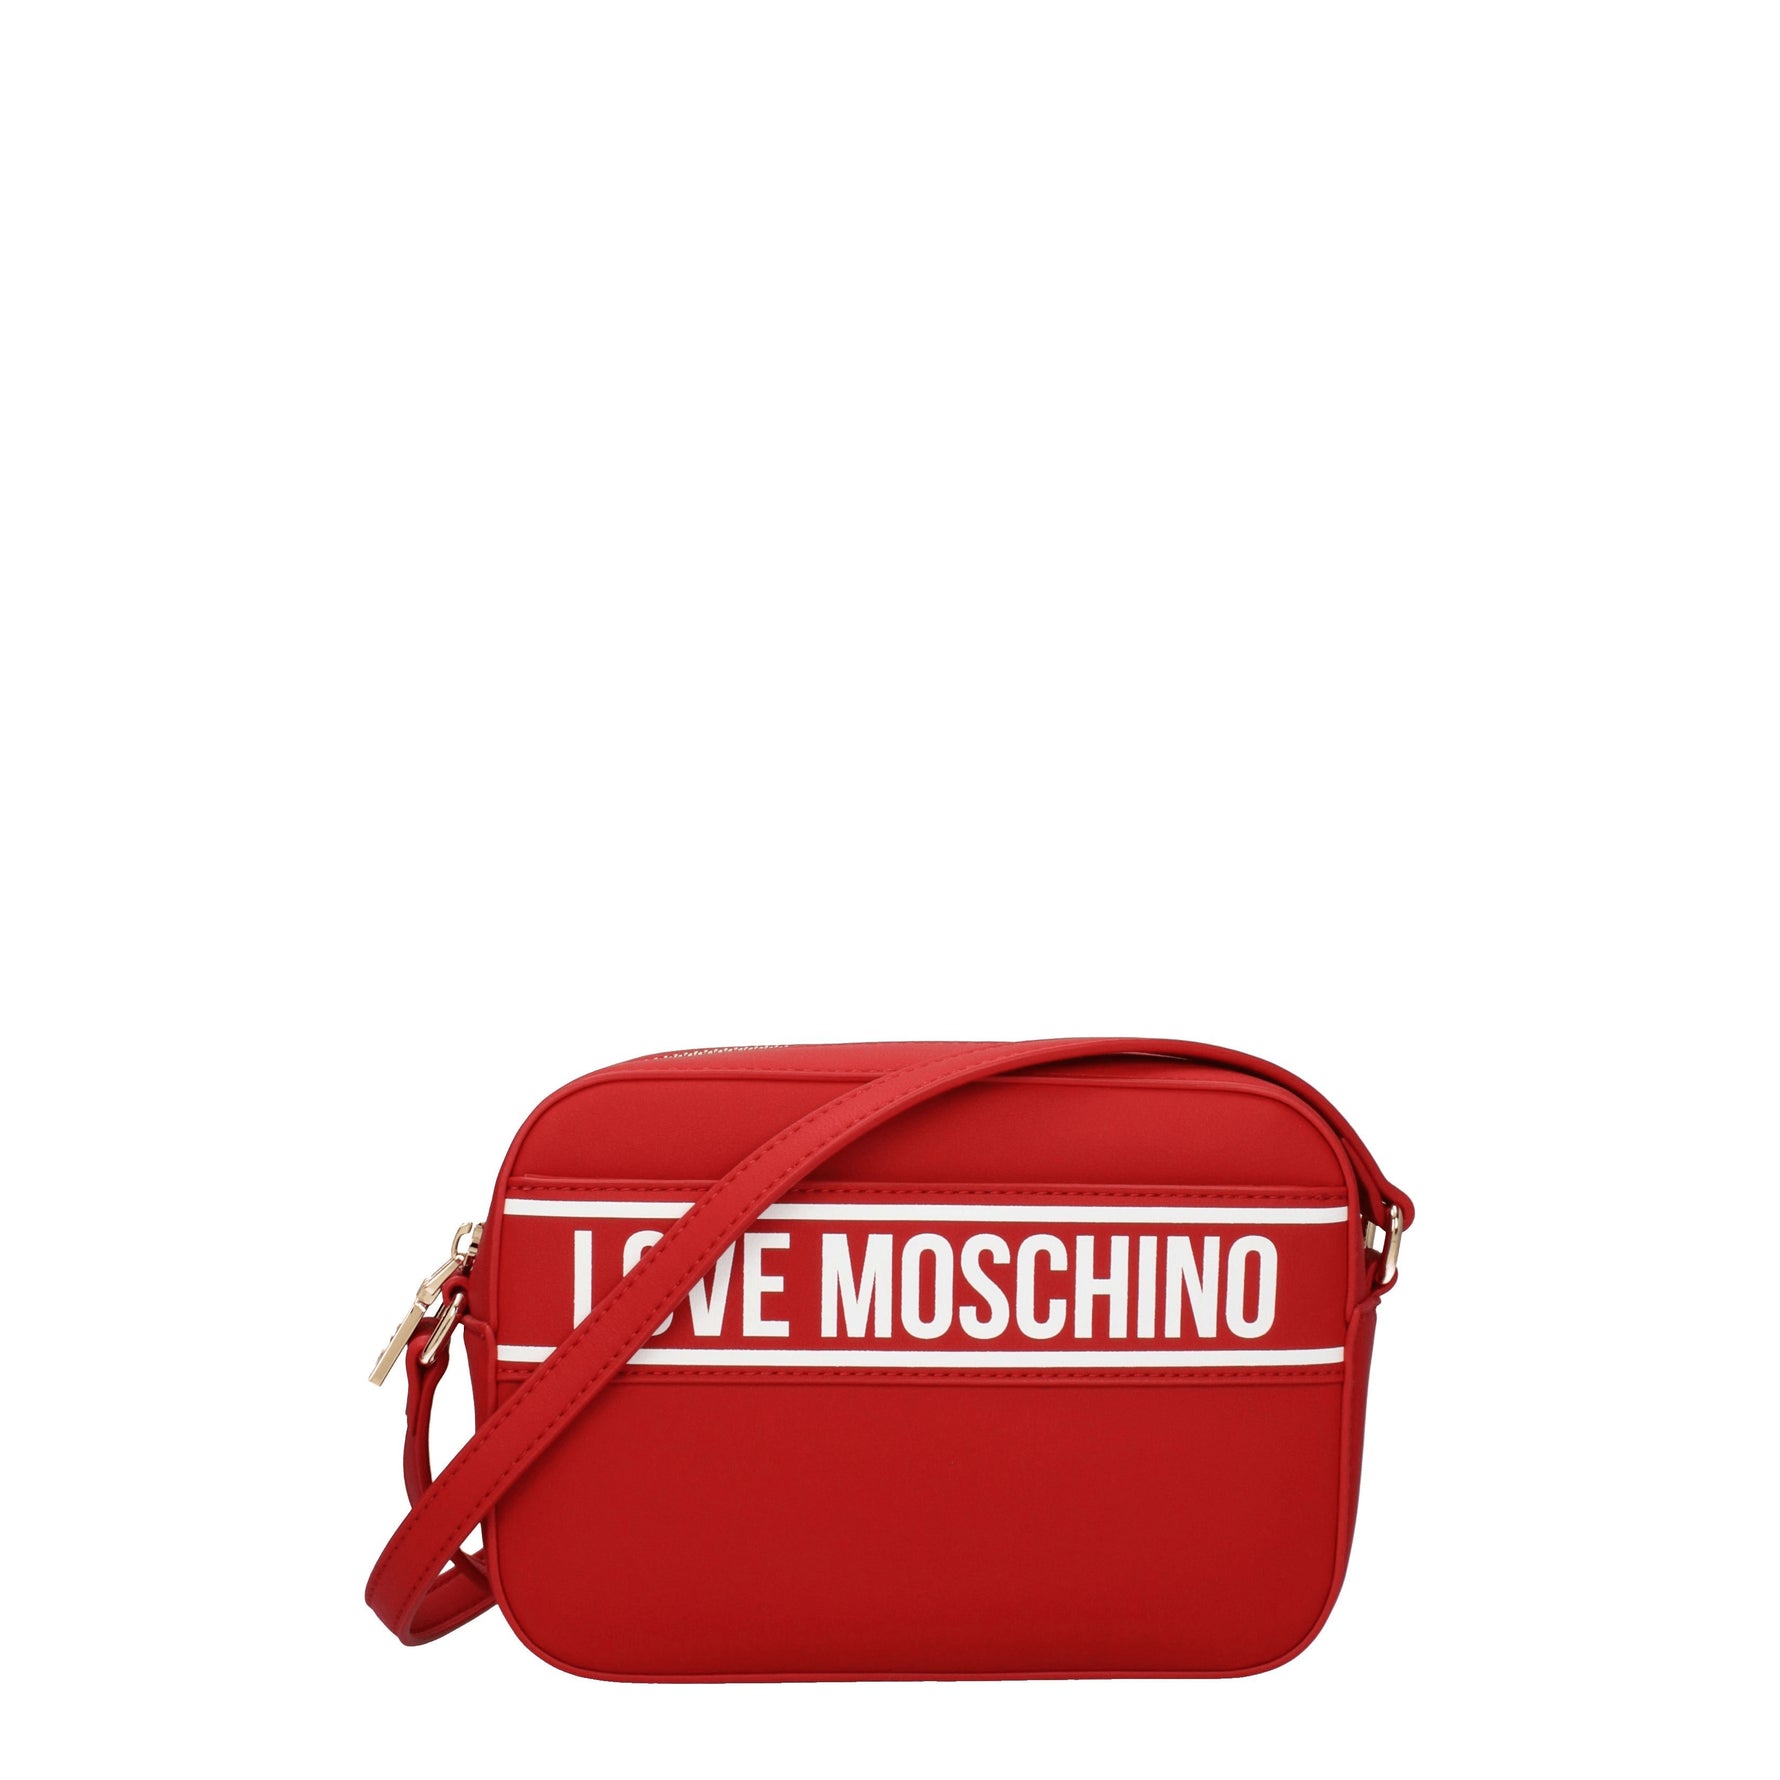 Love Moschino Borse a Tracolla Donna Poliuretano Rosso